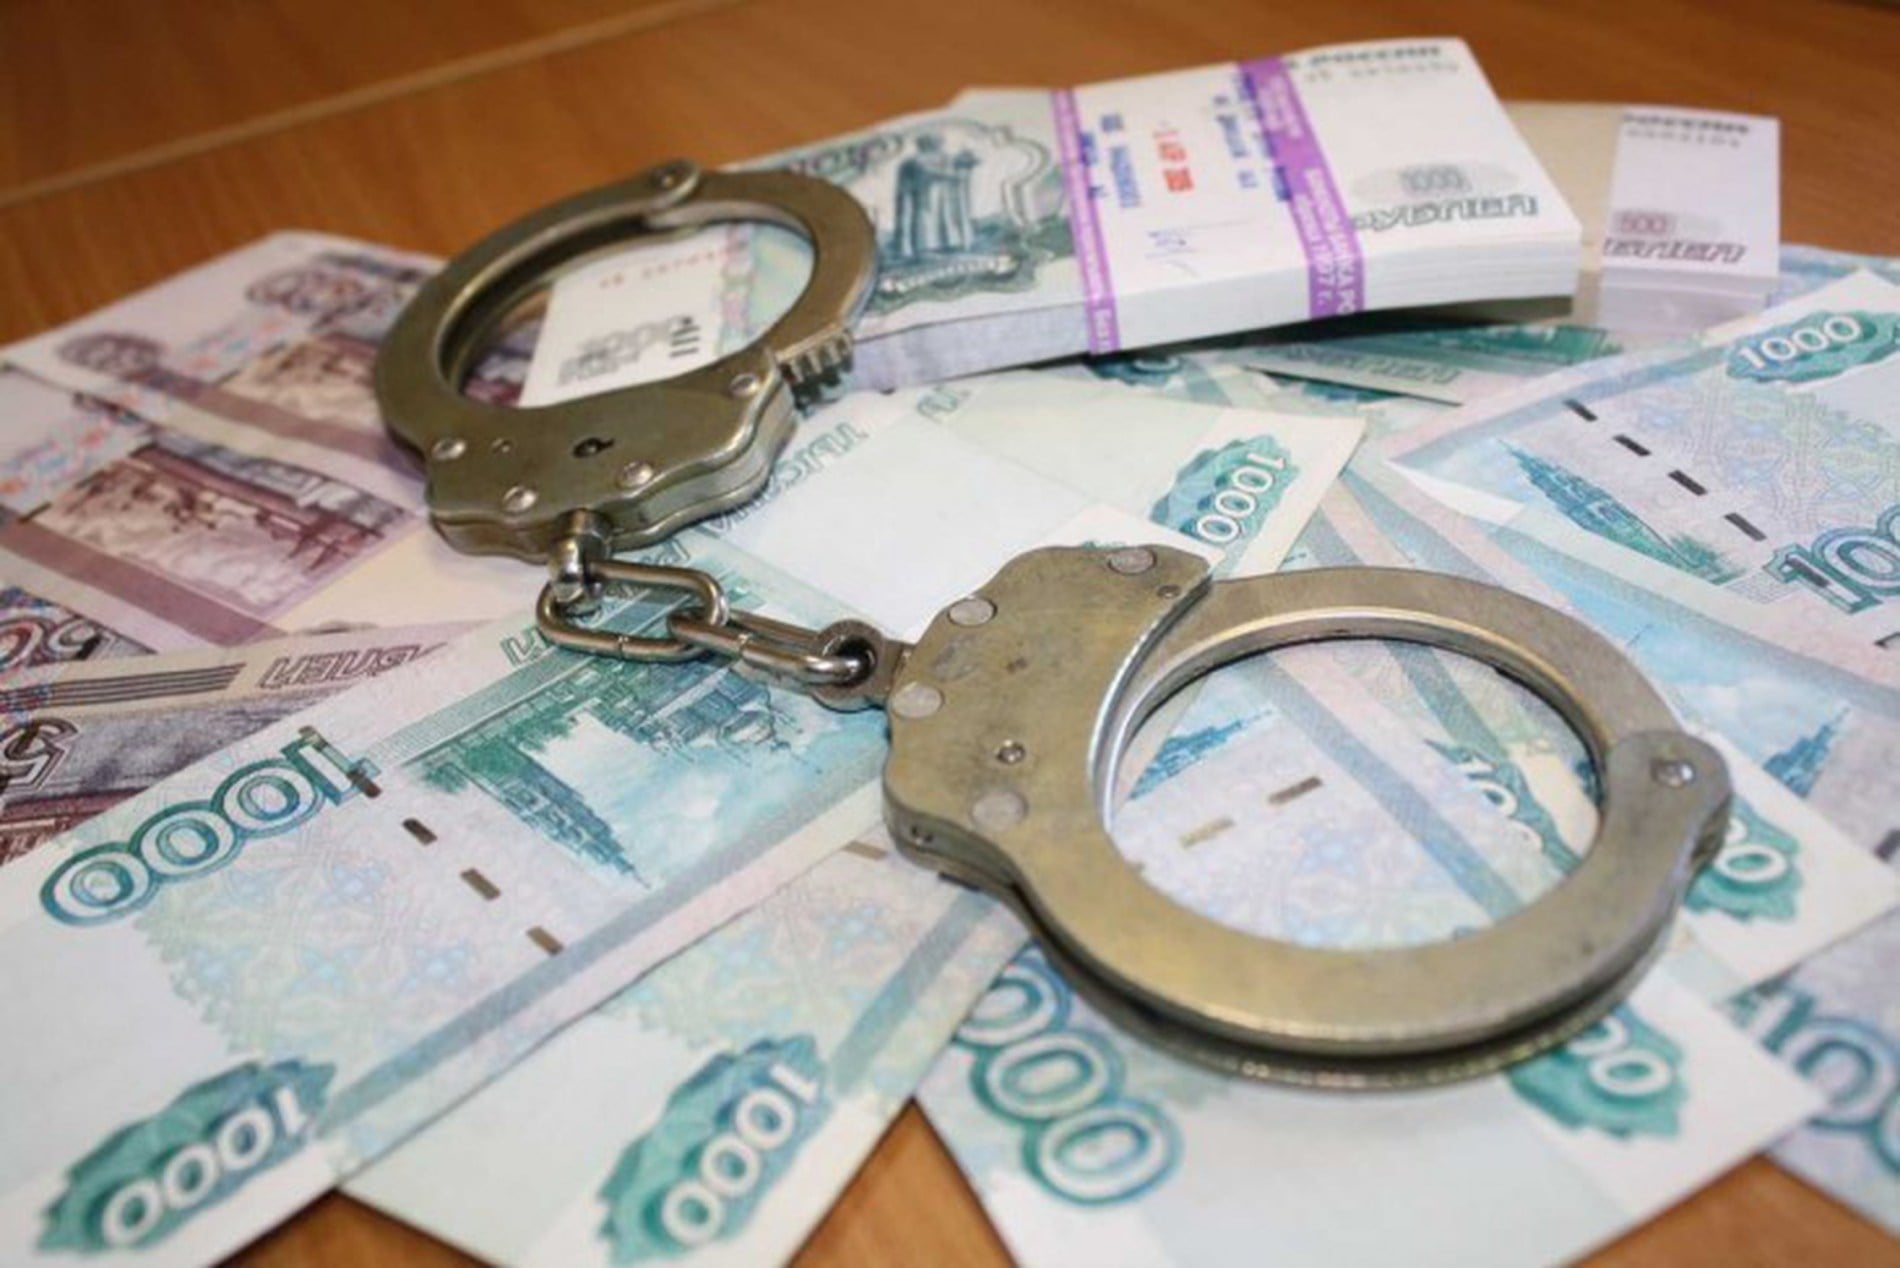 Судебные дела, Томские новости, взятка чиновника посадили за взятку Почти 2,4 млн руб. взыскали с экс-главы района в Томской области, осужденного за получение взяток